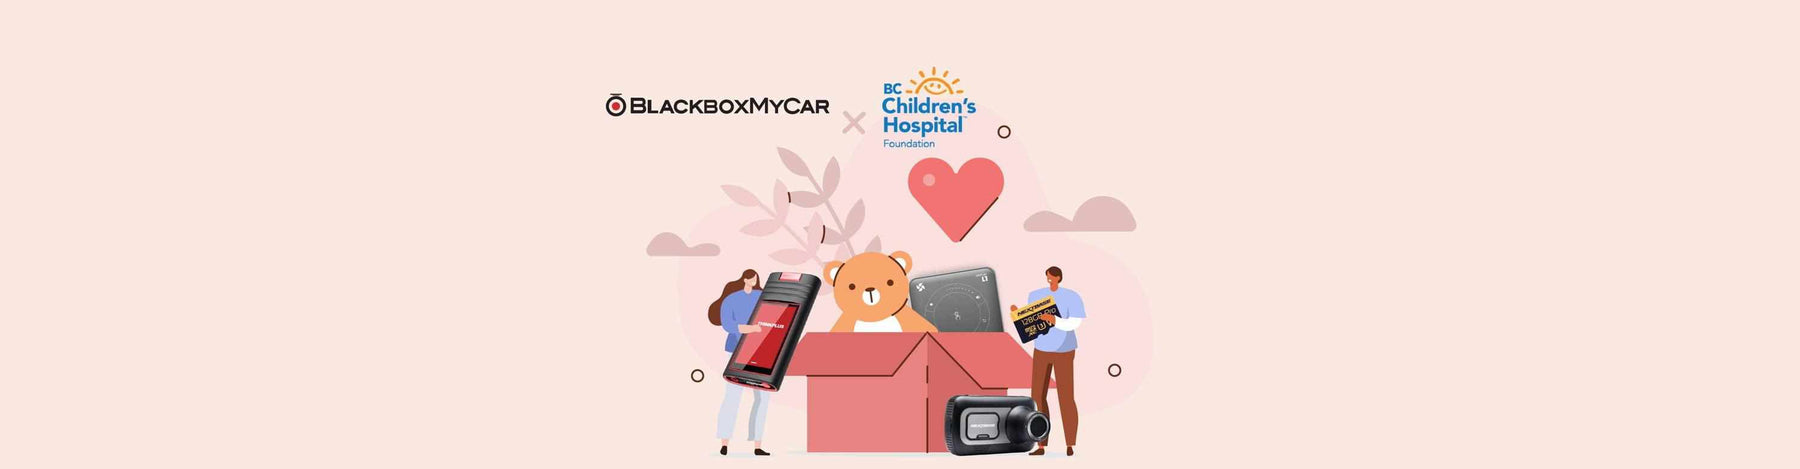 BlackboxMyCar | Helping Out In the Community - BC Children's Hospital Foundation 36th Annual Crystal Gala - - BlackboxMyCar Canada